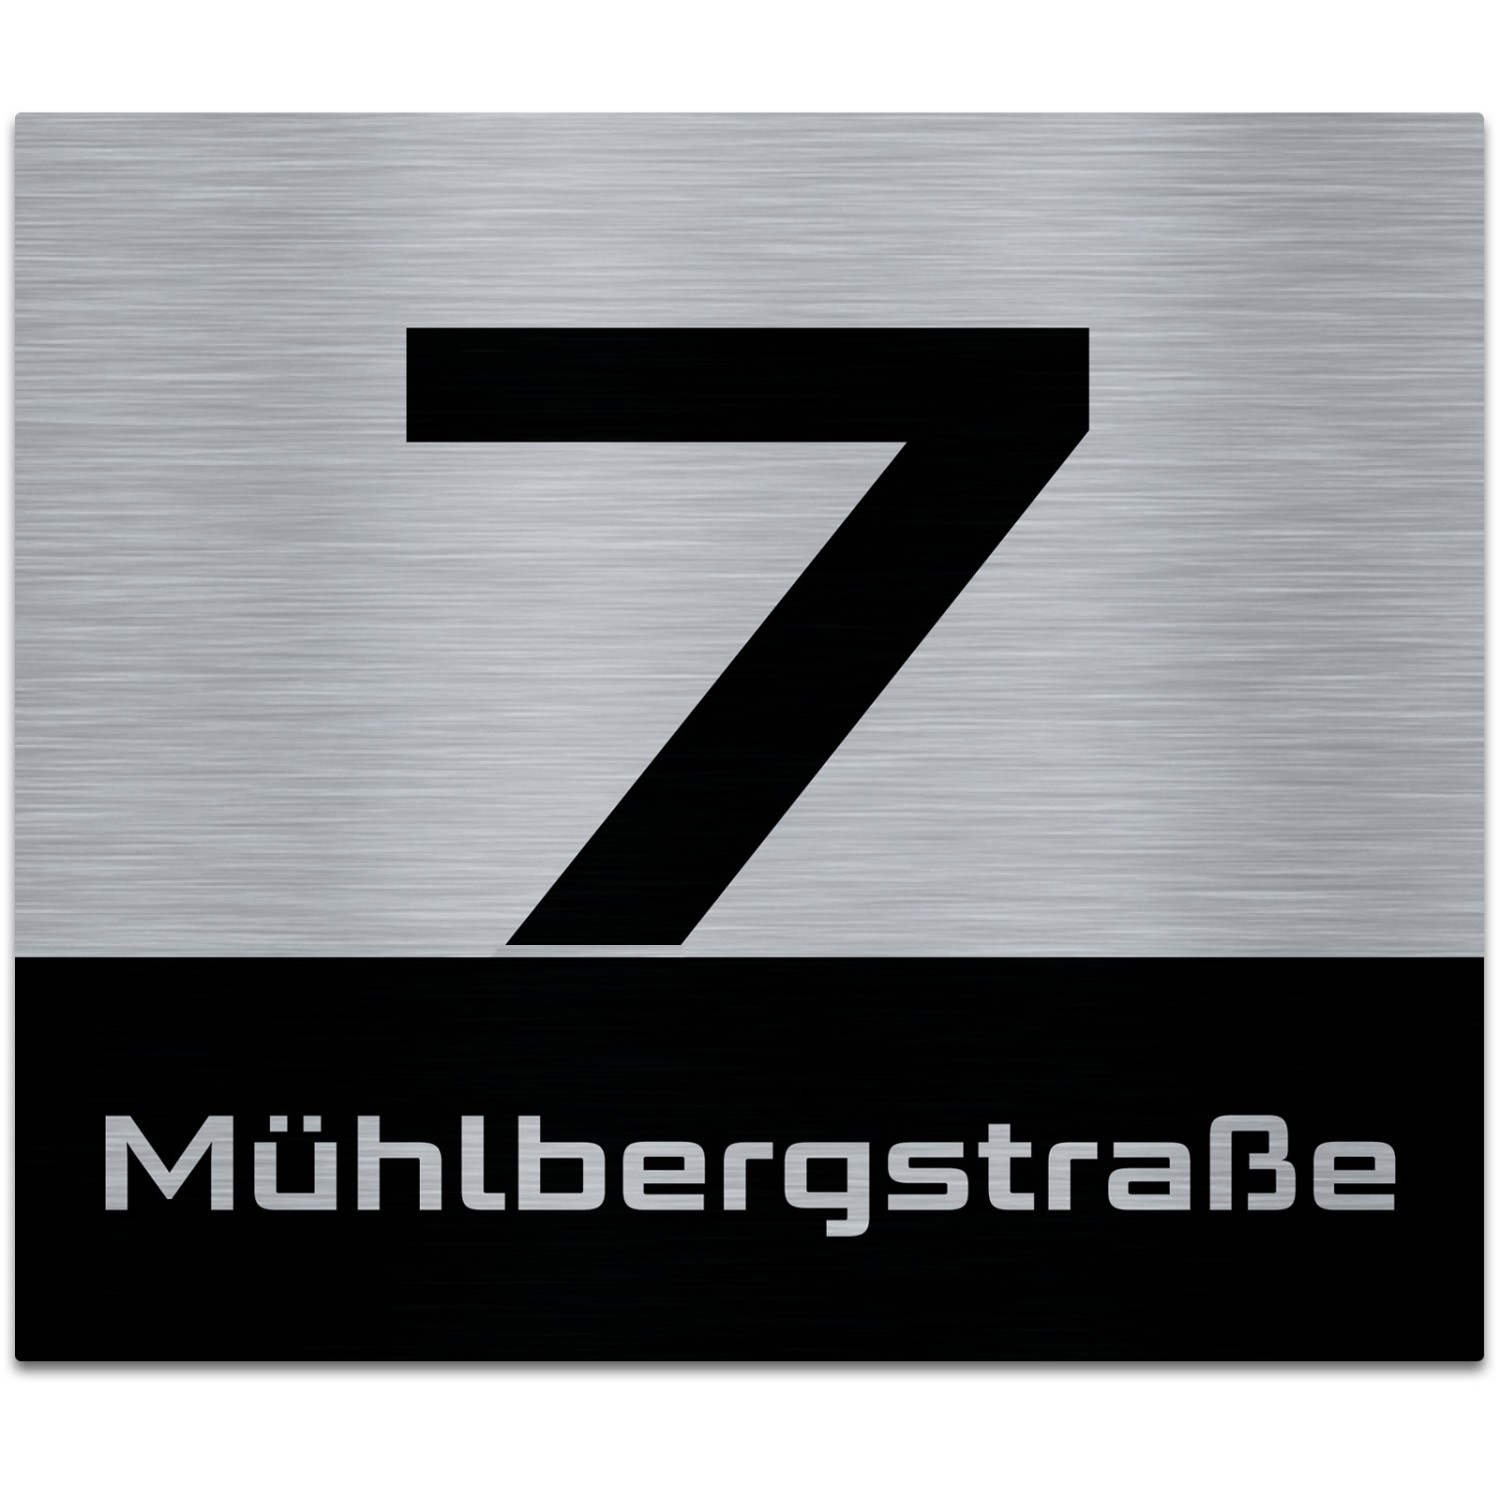 Hausnummer auf Aluverbund gebürstet Edelstahl Look schwarz (Format: 3-4 Zahlen 24 x 17 cm Befestigung: keine, ohne Löcher)